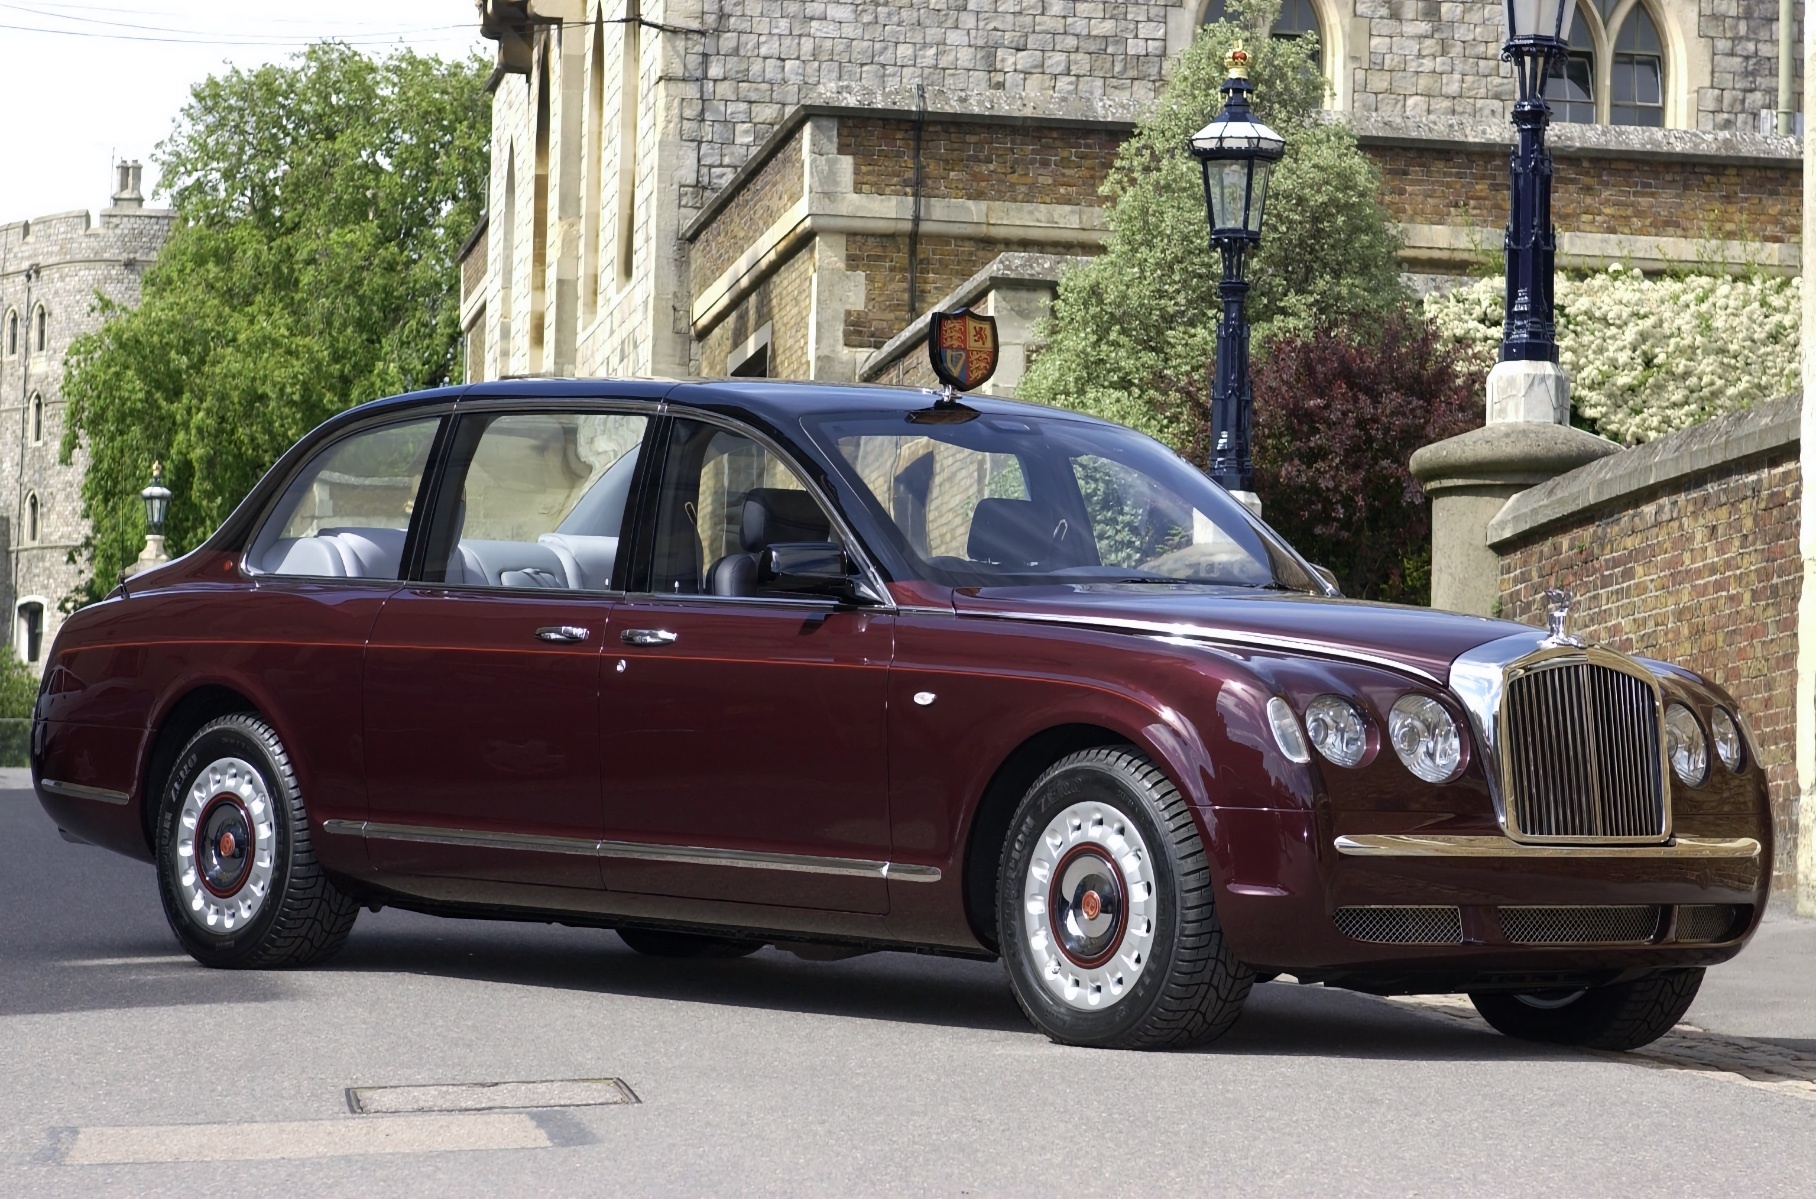 Bentley до сих пор красит машины в цвет родом из 1930-х годов